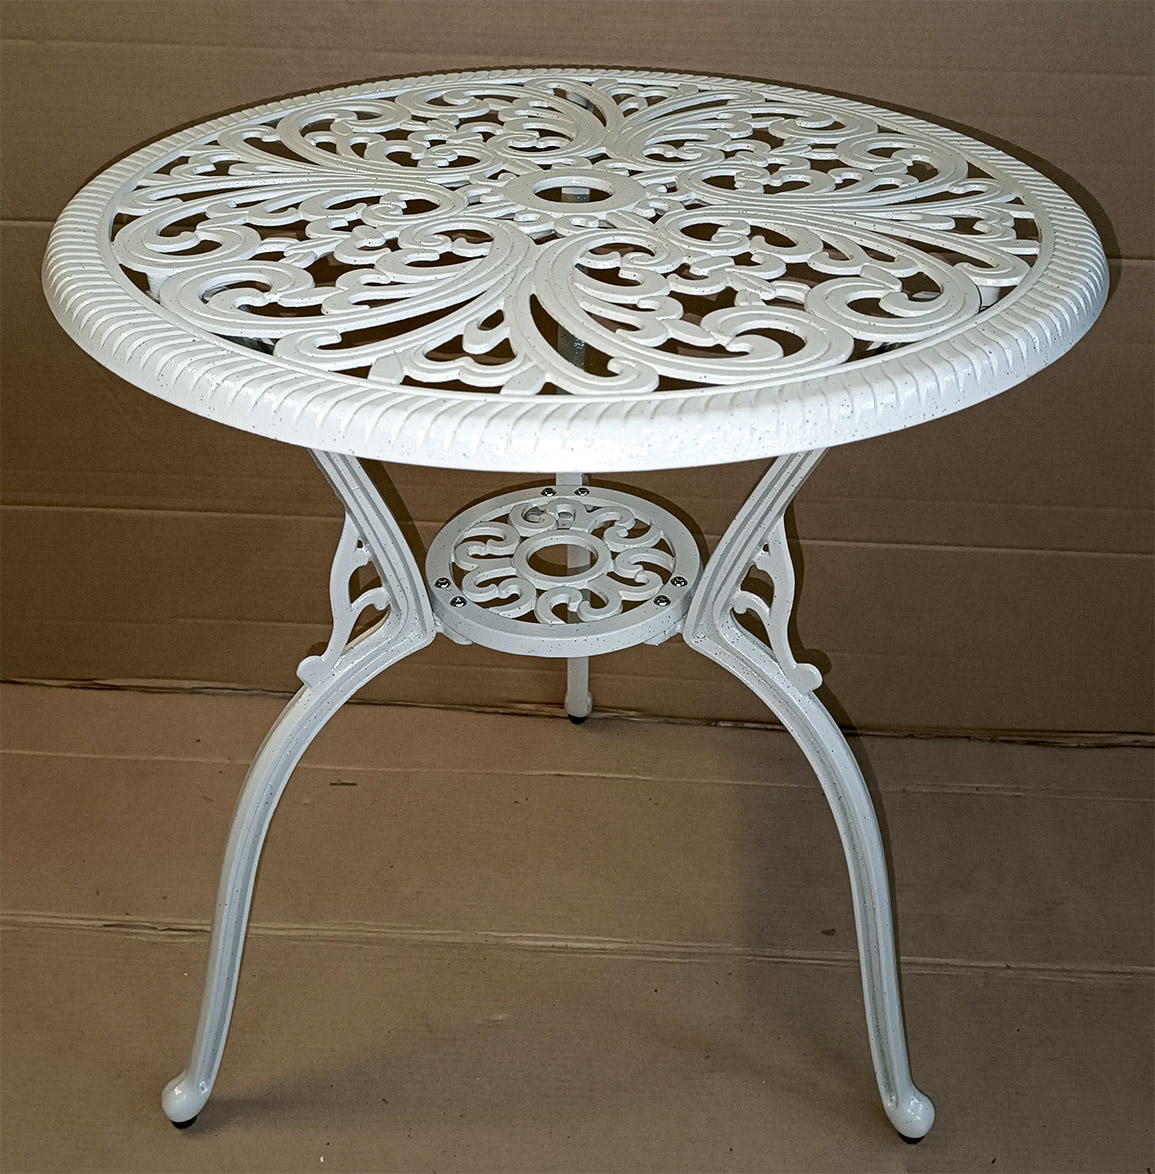 Круглый садовый стол из литого алюминия, чугунная мебель для дачи в беседку, стол под цветок, ажурный металлический столик патио, мебель для пансионатов и кафе бистро